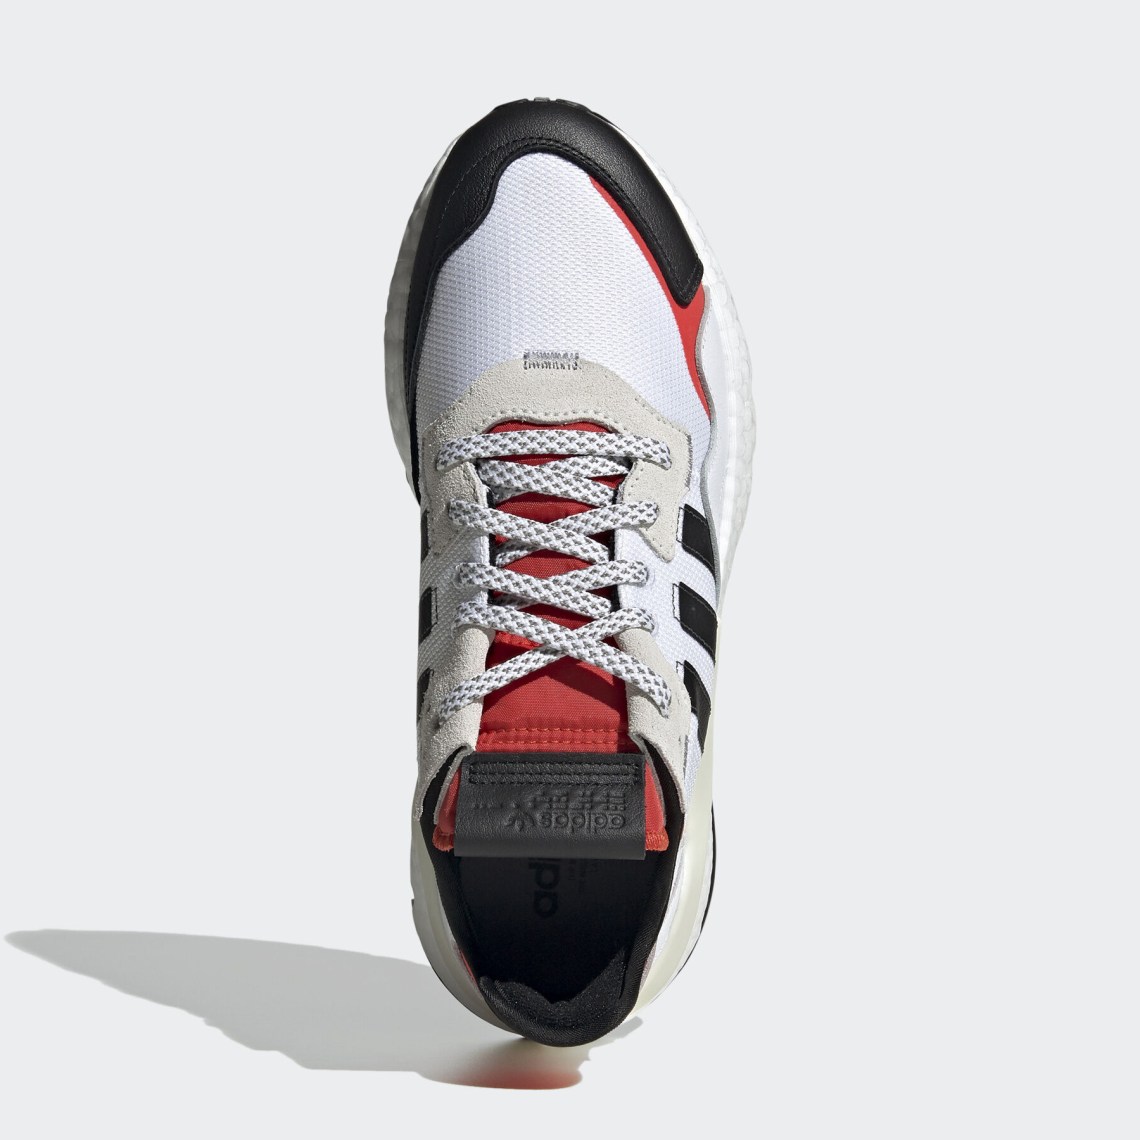 Adidas Nite Jogger Eh1293 6